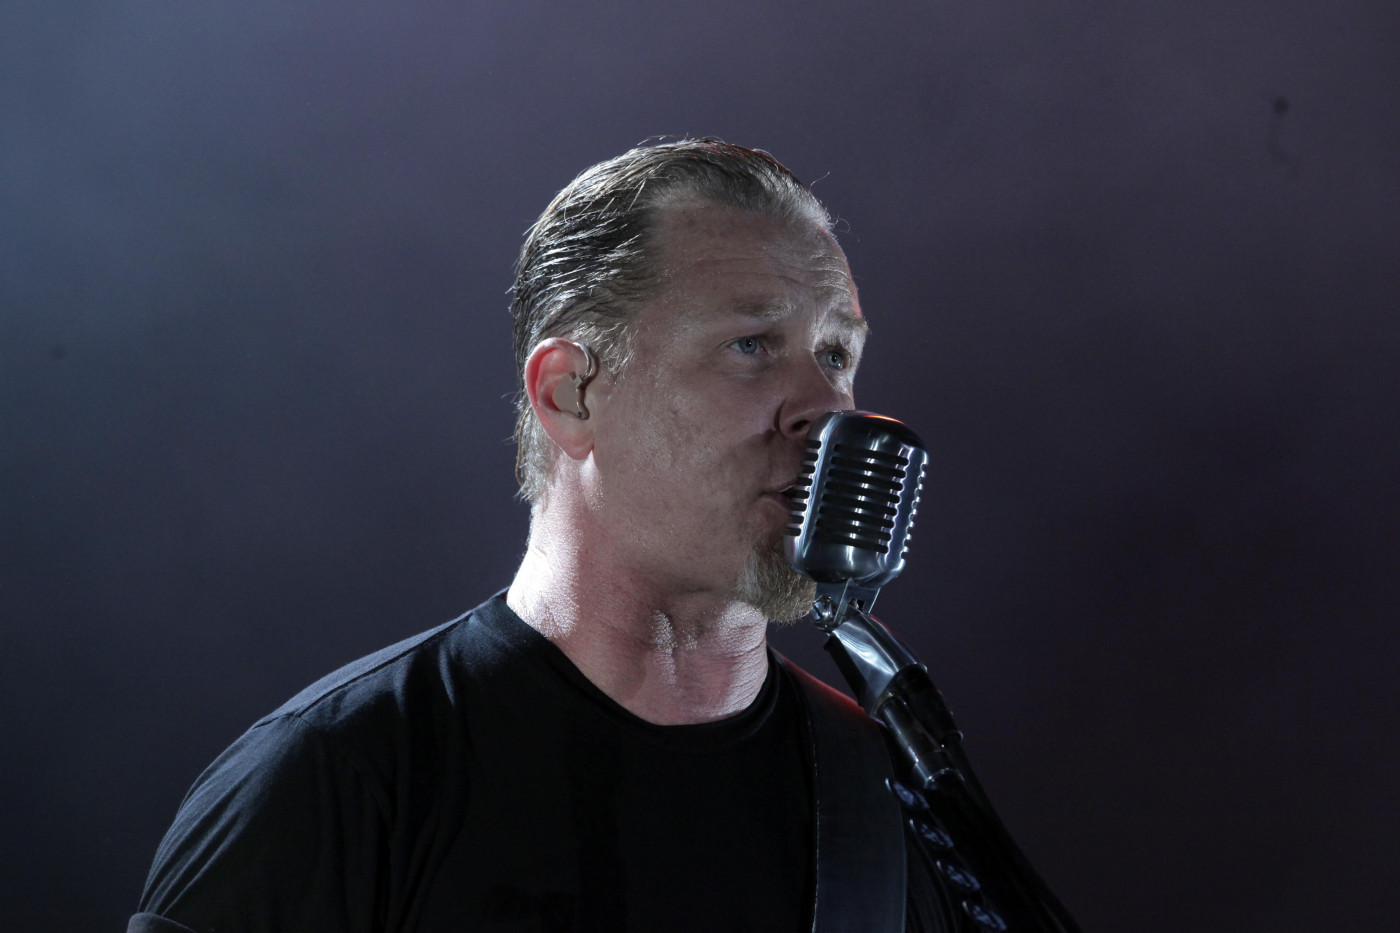 James Hetfield, vocalista da banda Mettalica, cantando em um palco